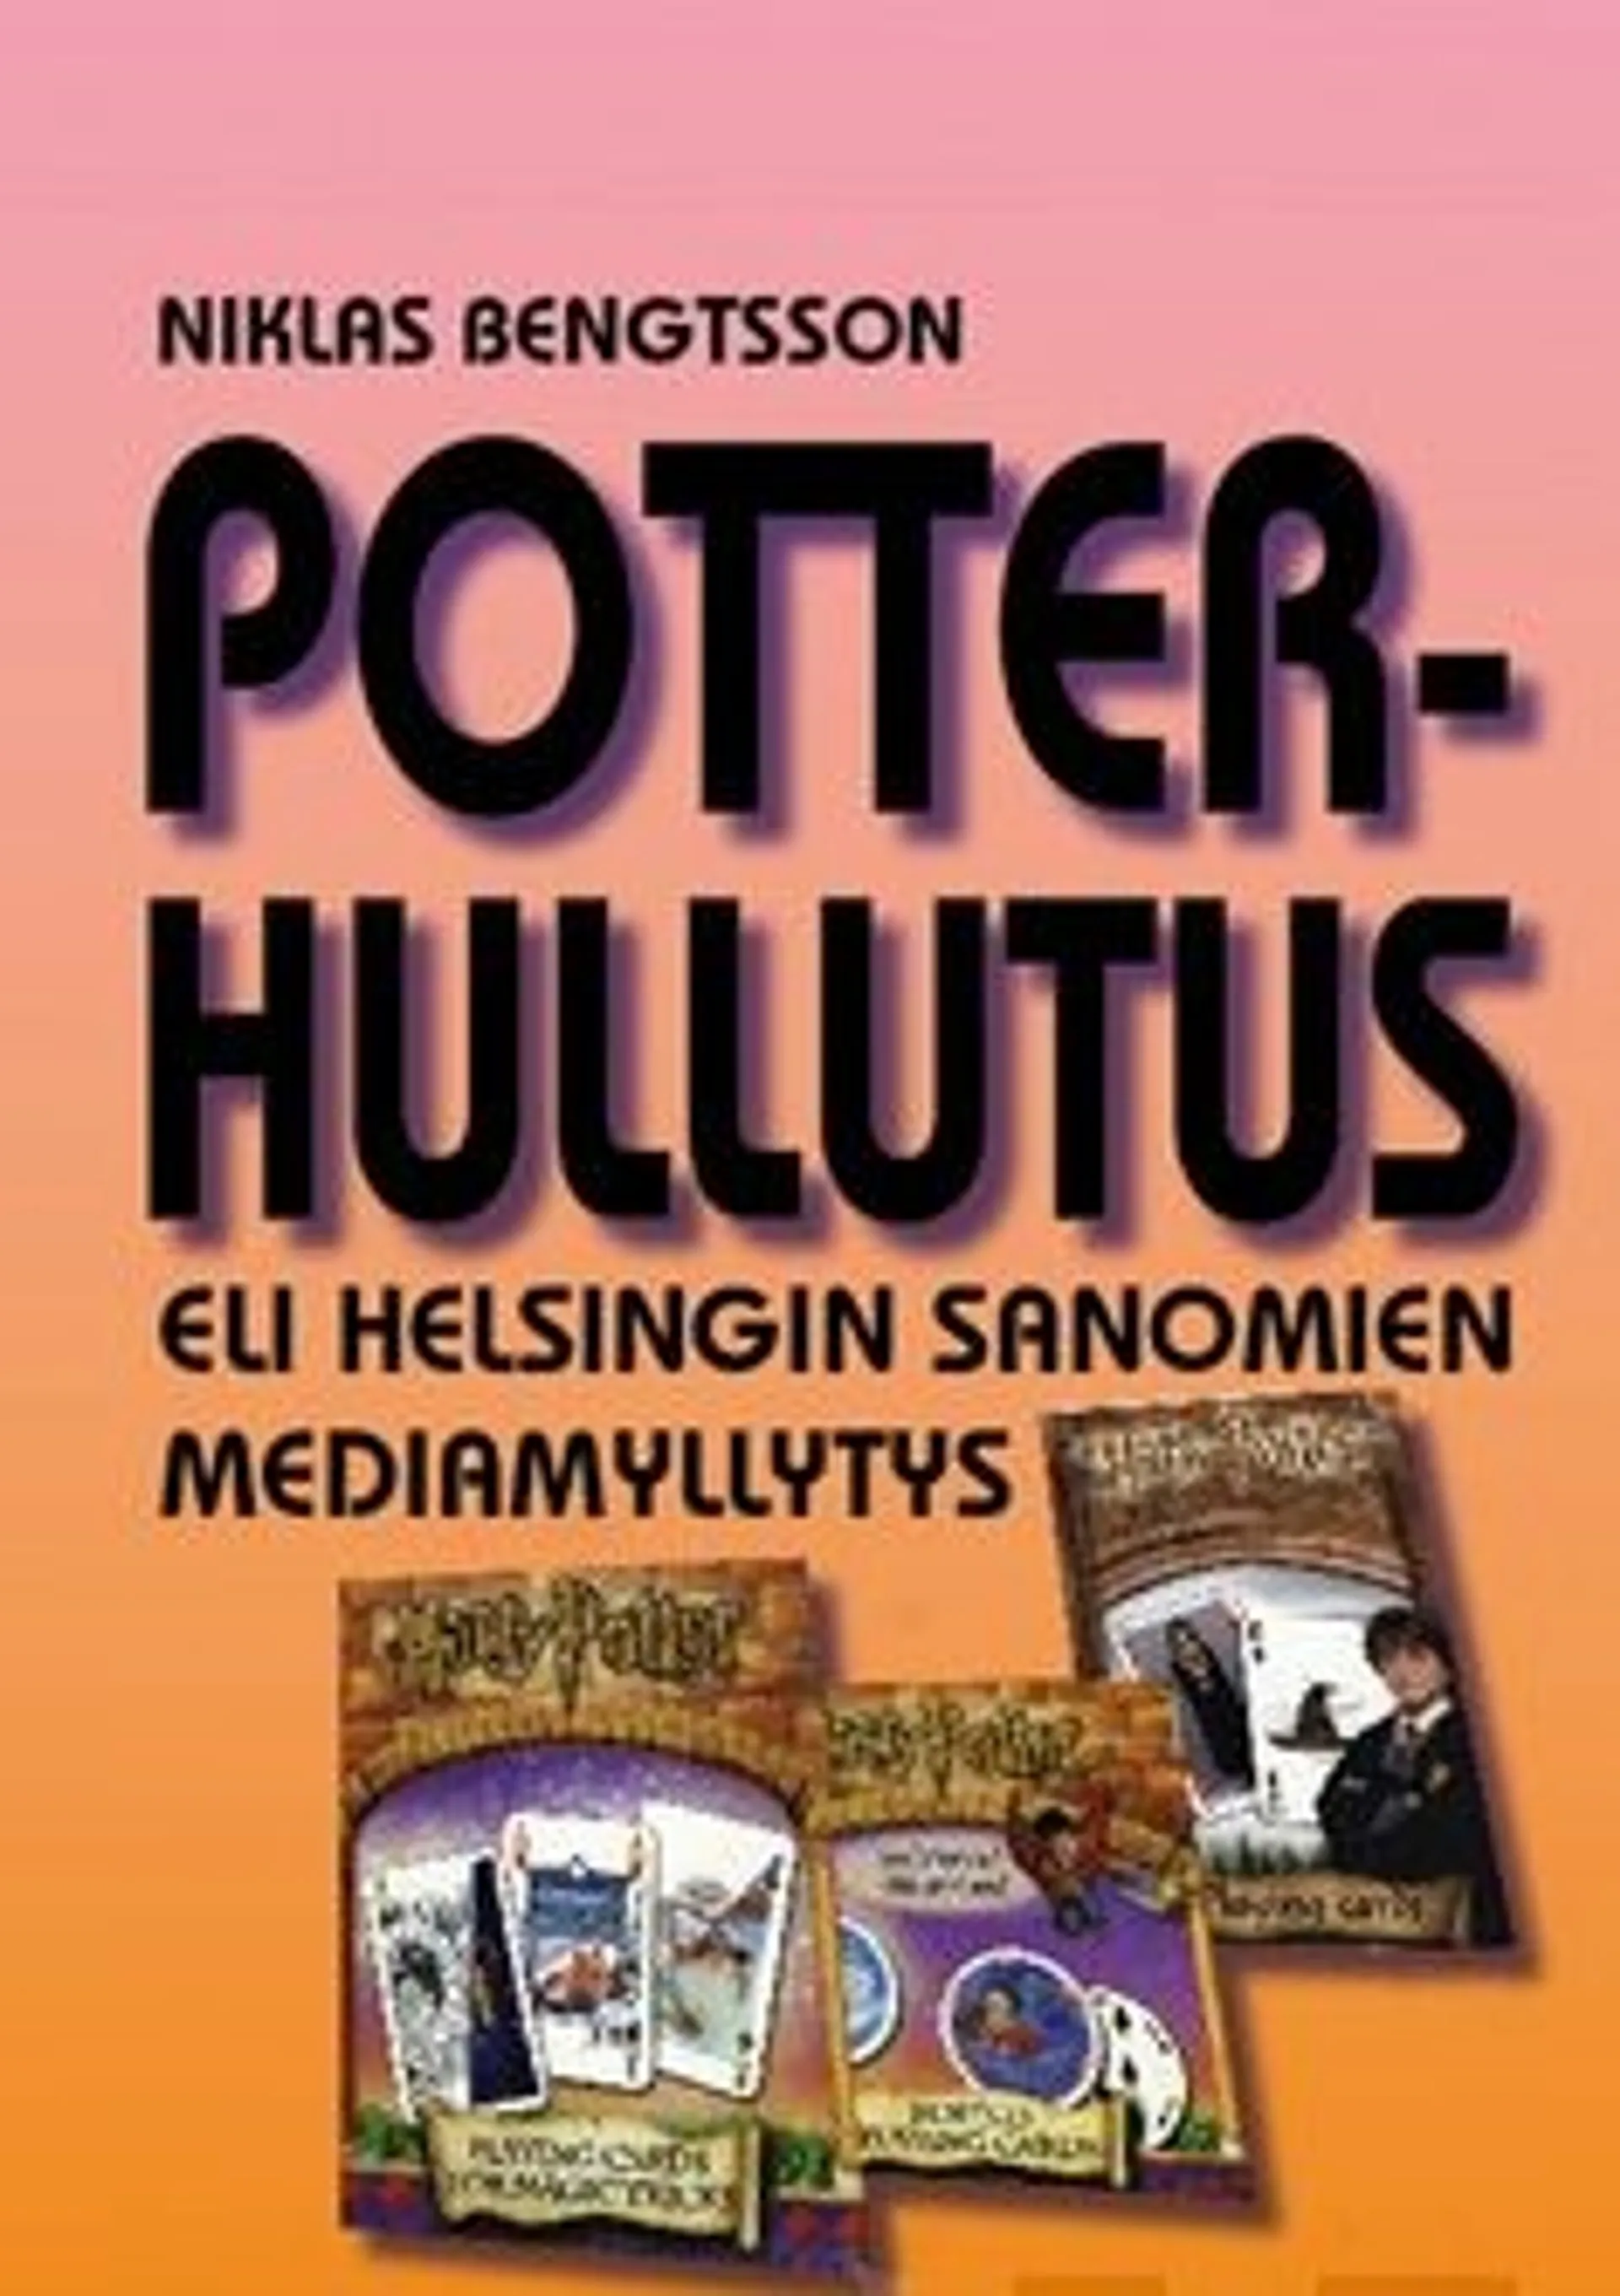 Bengtsson, Potter-hullutus eli Helsingin Sanomien mediamyllytys